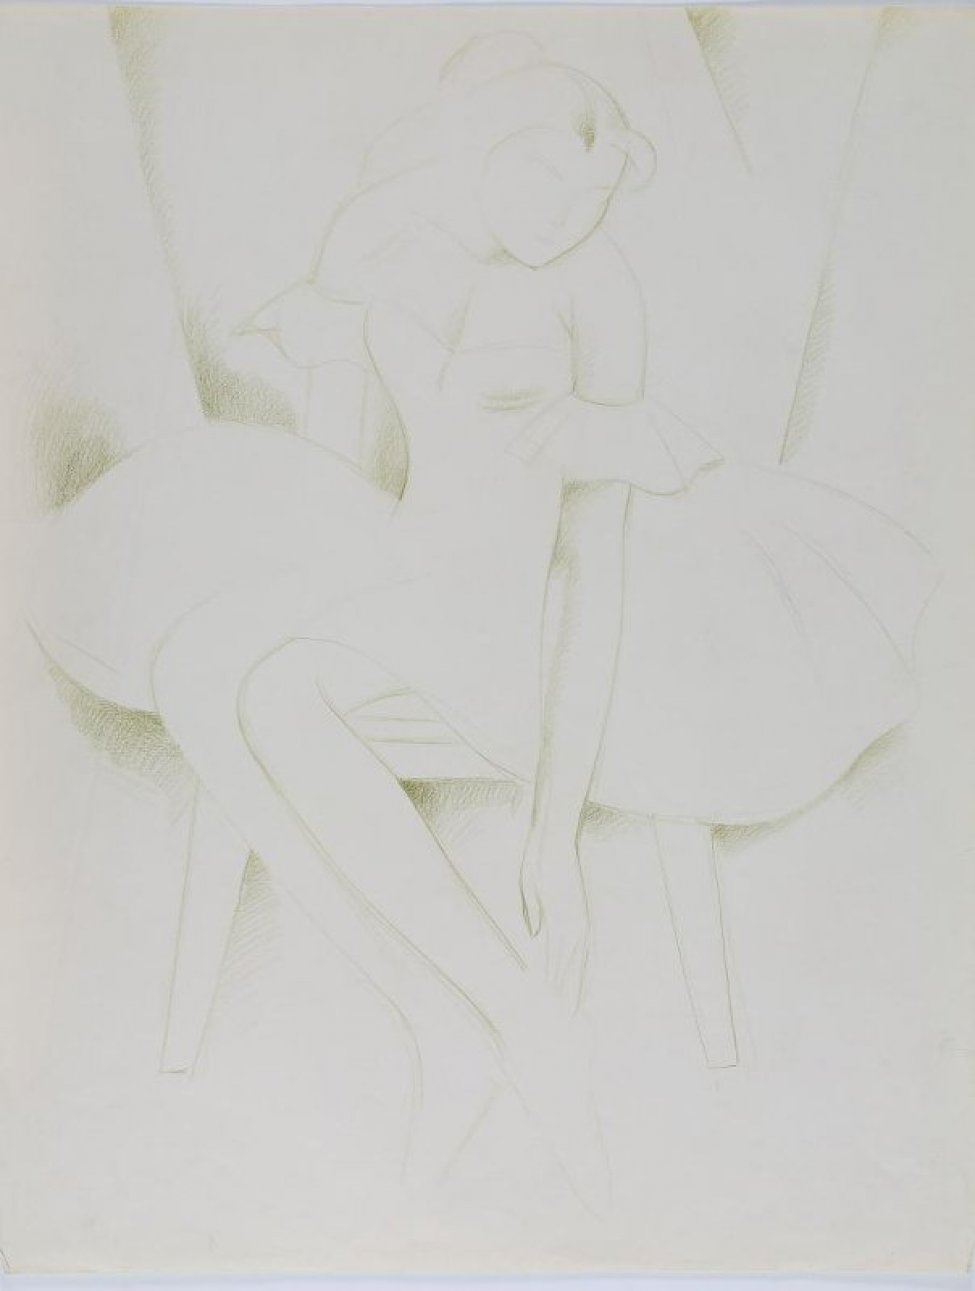 Изображена сидящая на табурете молодая женщина в светлом платье. Голова в легком повороте вправо опущена вниз, правая рука опущенная вниз лежит на щиколотке.